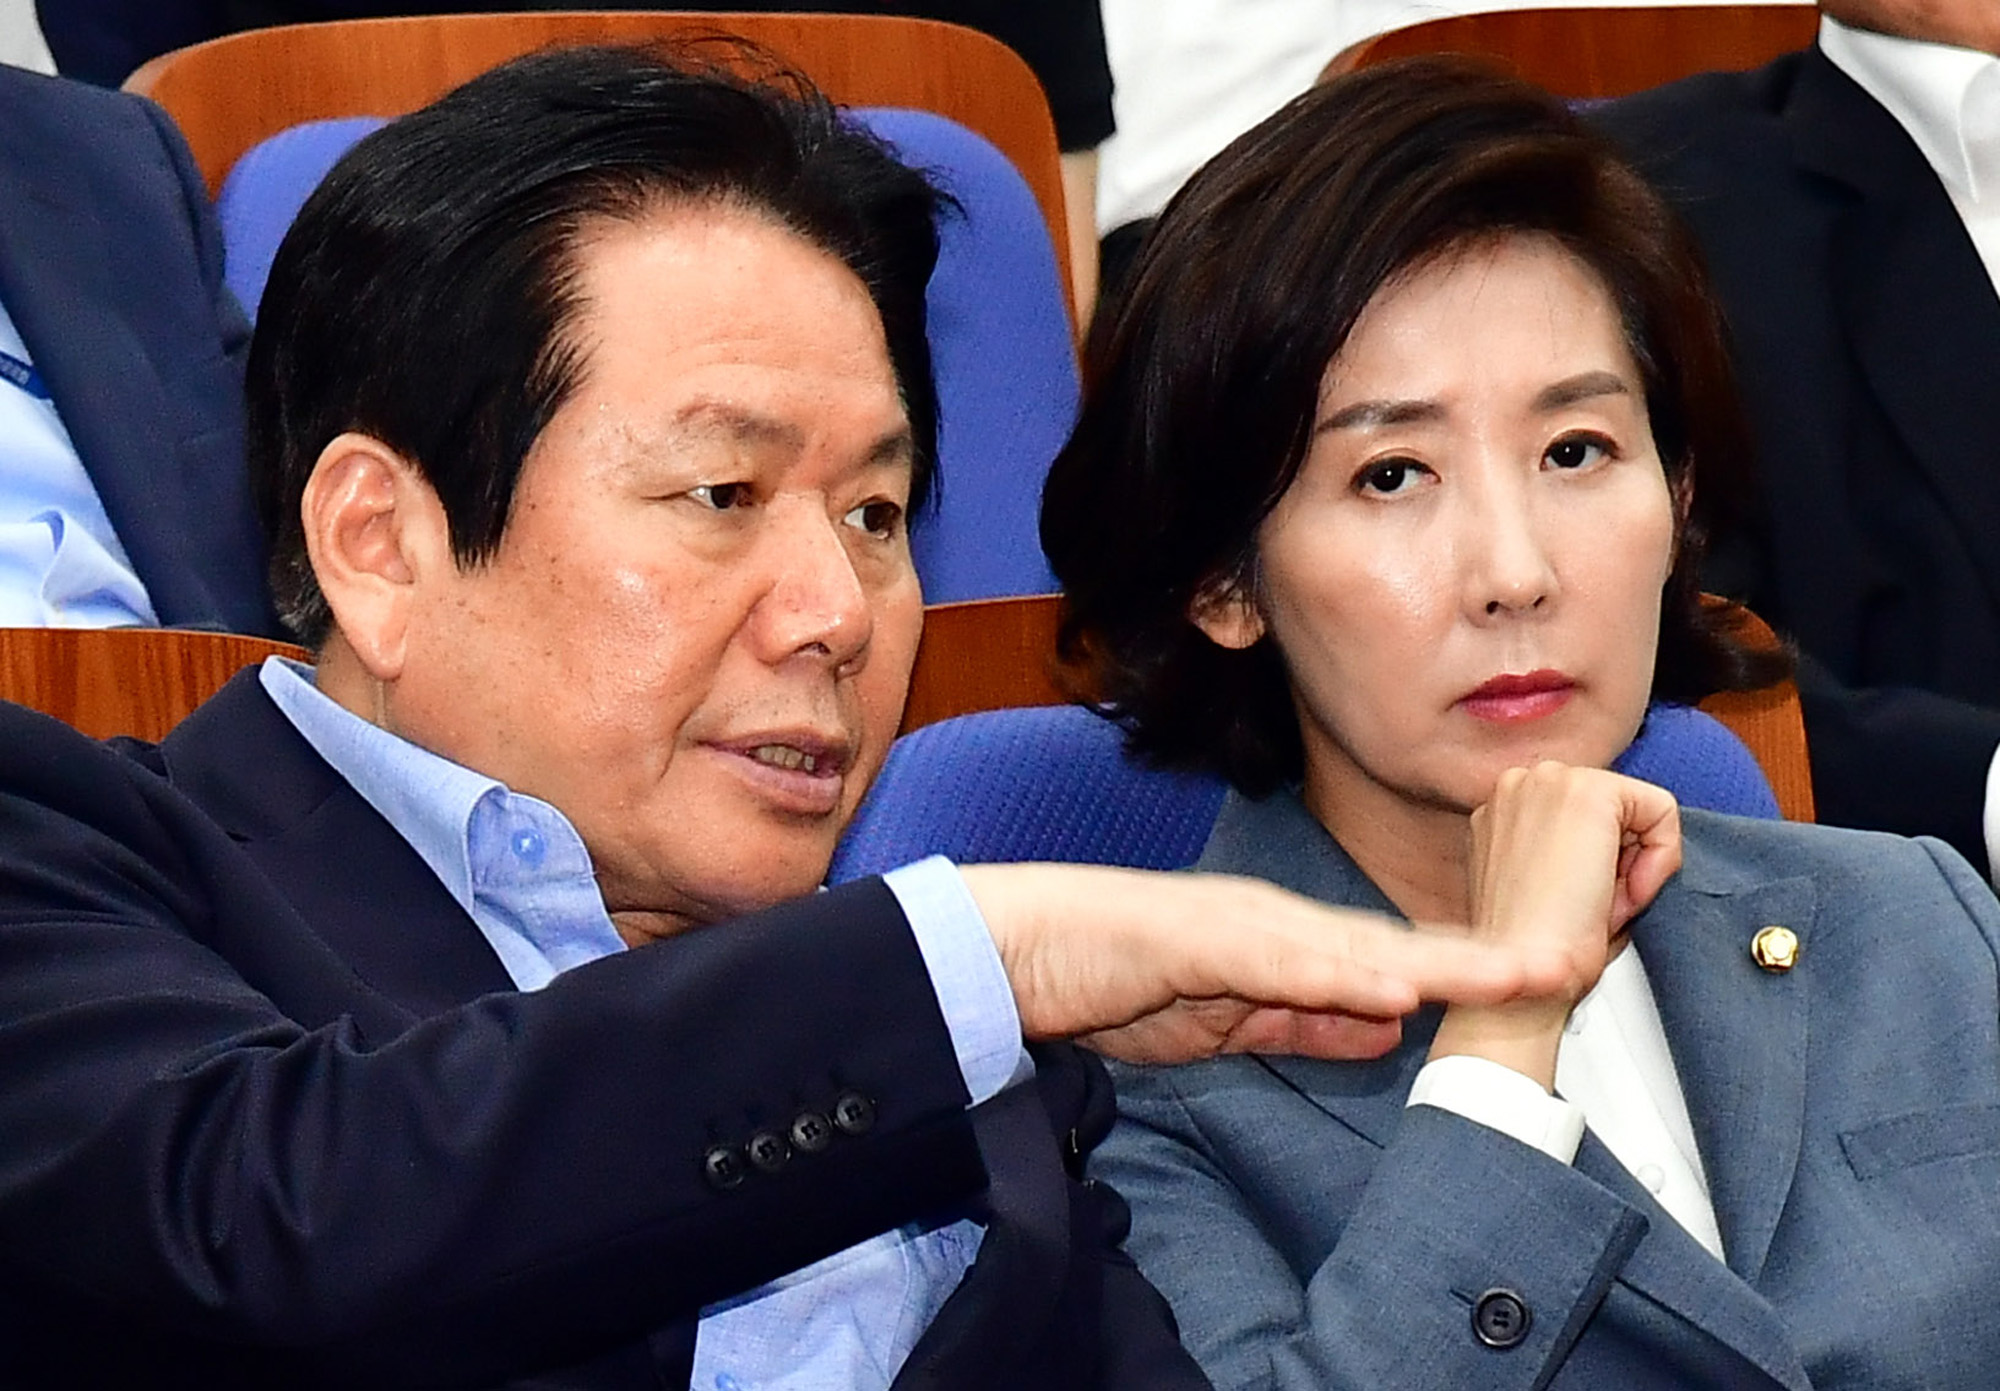 자유한국당;조국후보자반박기자간담회;나경원원내대표